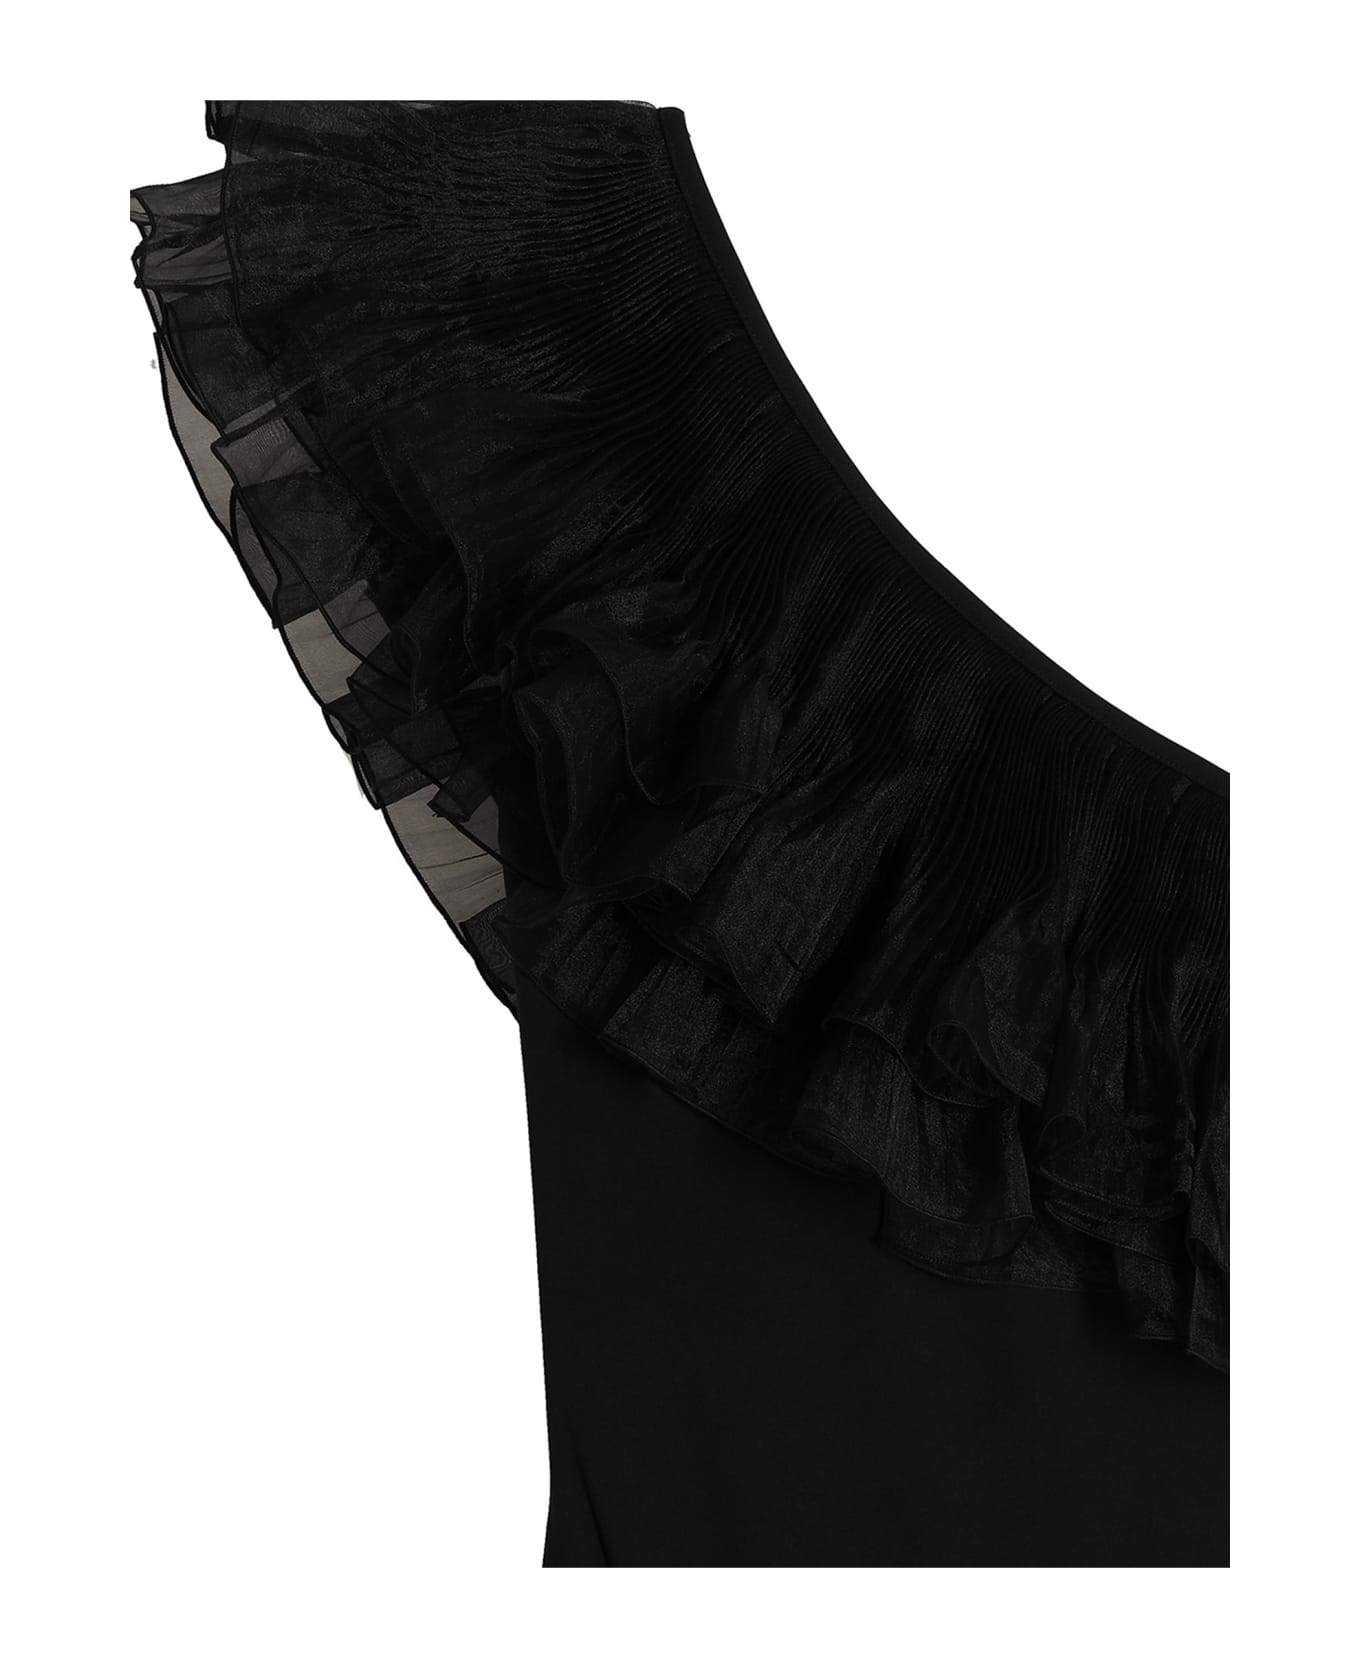 Giambattista Valli Ruches One-piece Swimsuit - Black  